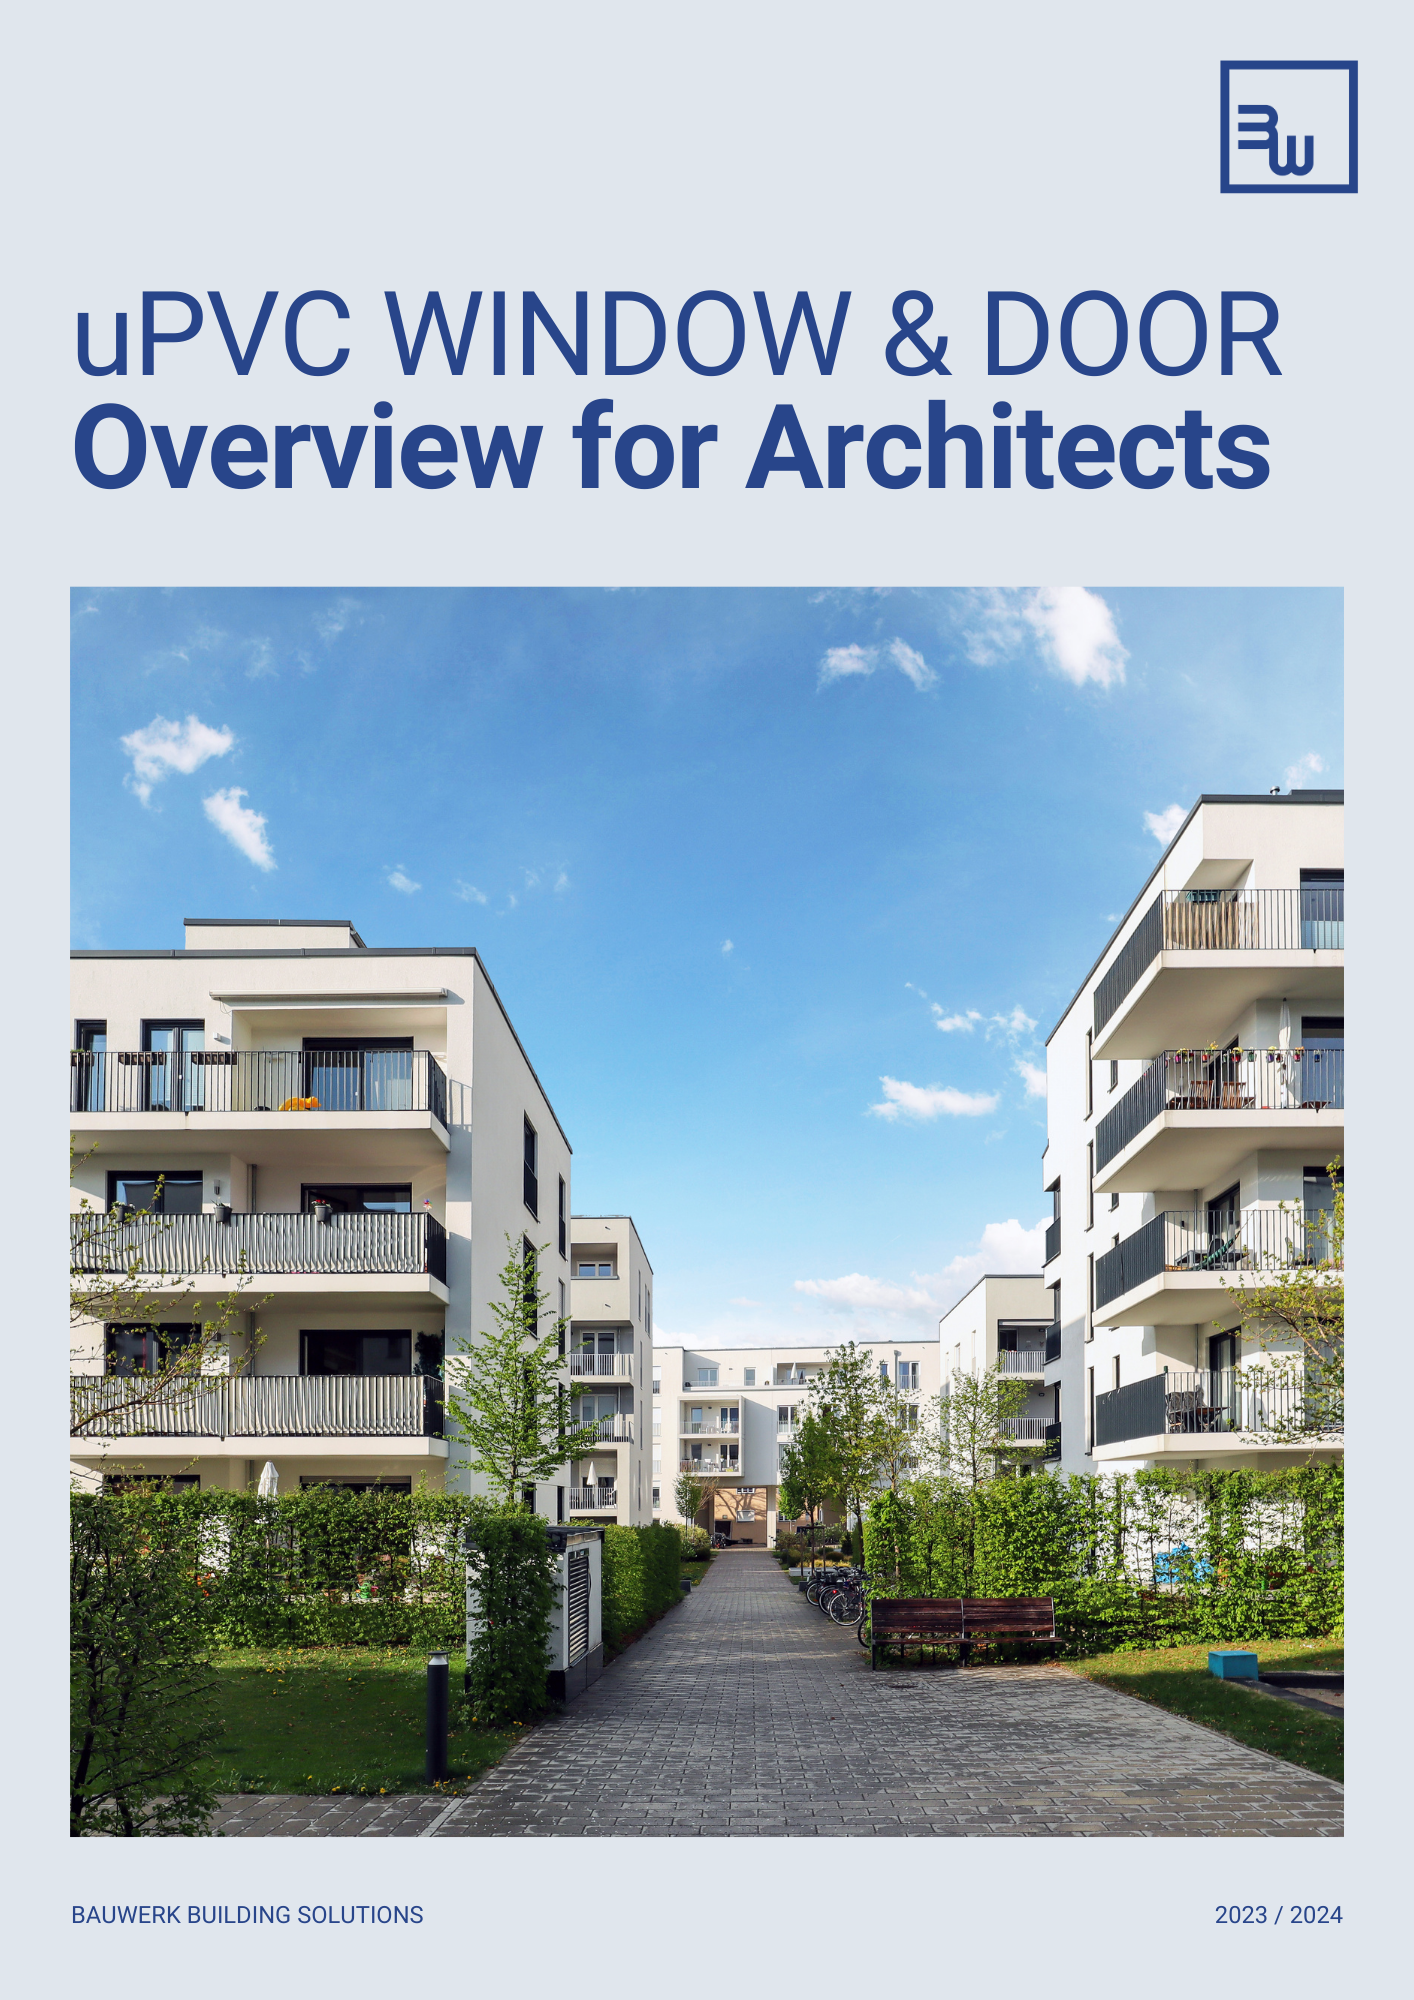 Bauwerk Window & Door Brochure - Architect v2